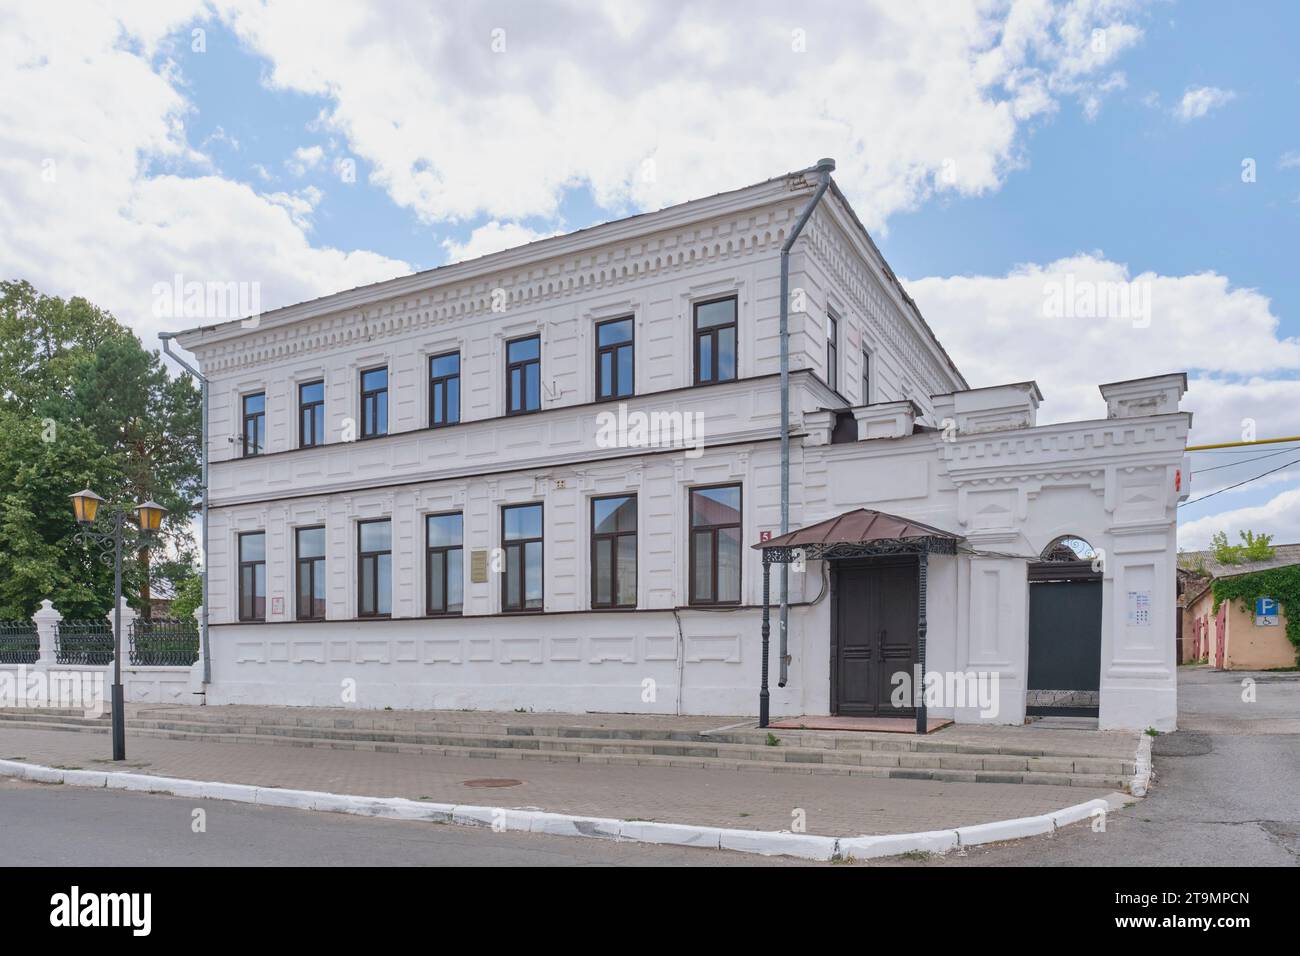 Yelabuga, Russie - 18 juin 2023 : Maison résidentielle de Bautin - bureau du marchand Stakheev dans le centre historique. Début 20e. Construire en eclect libre Banque D'Images